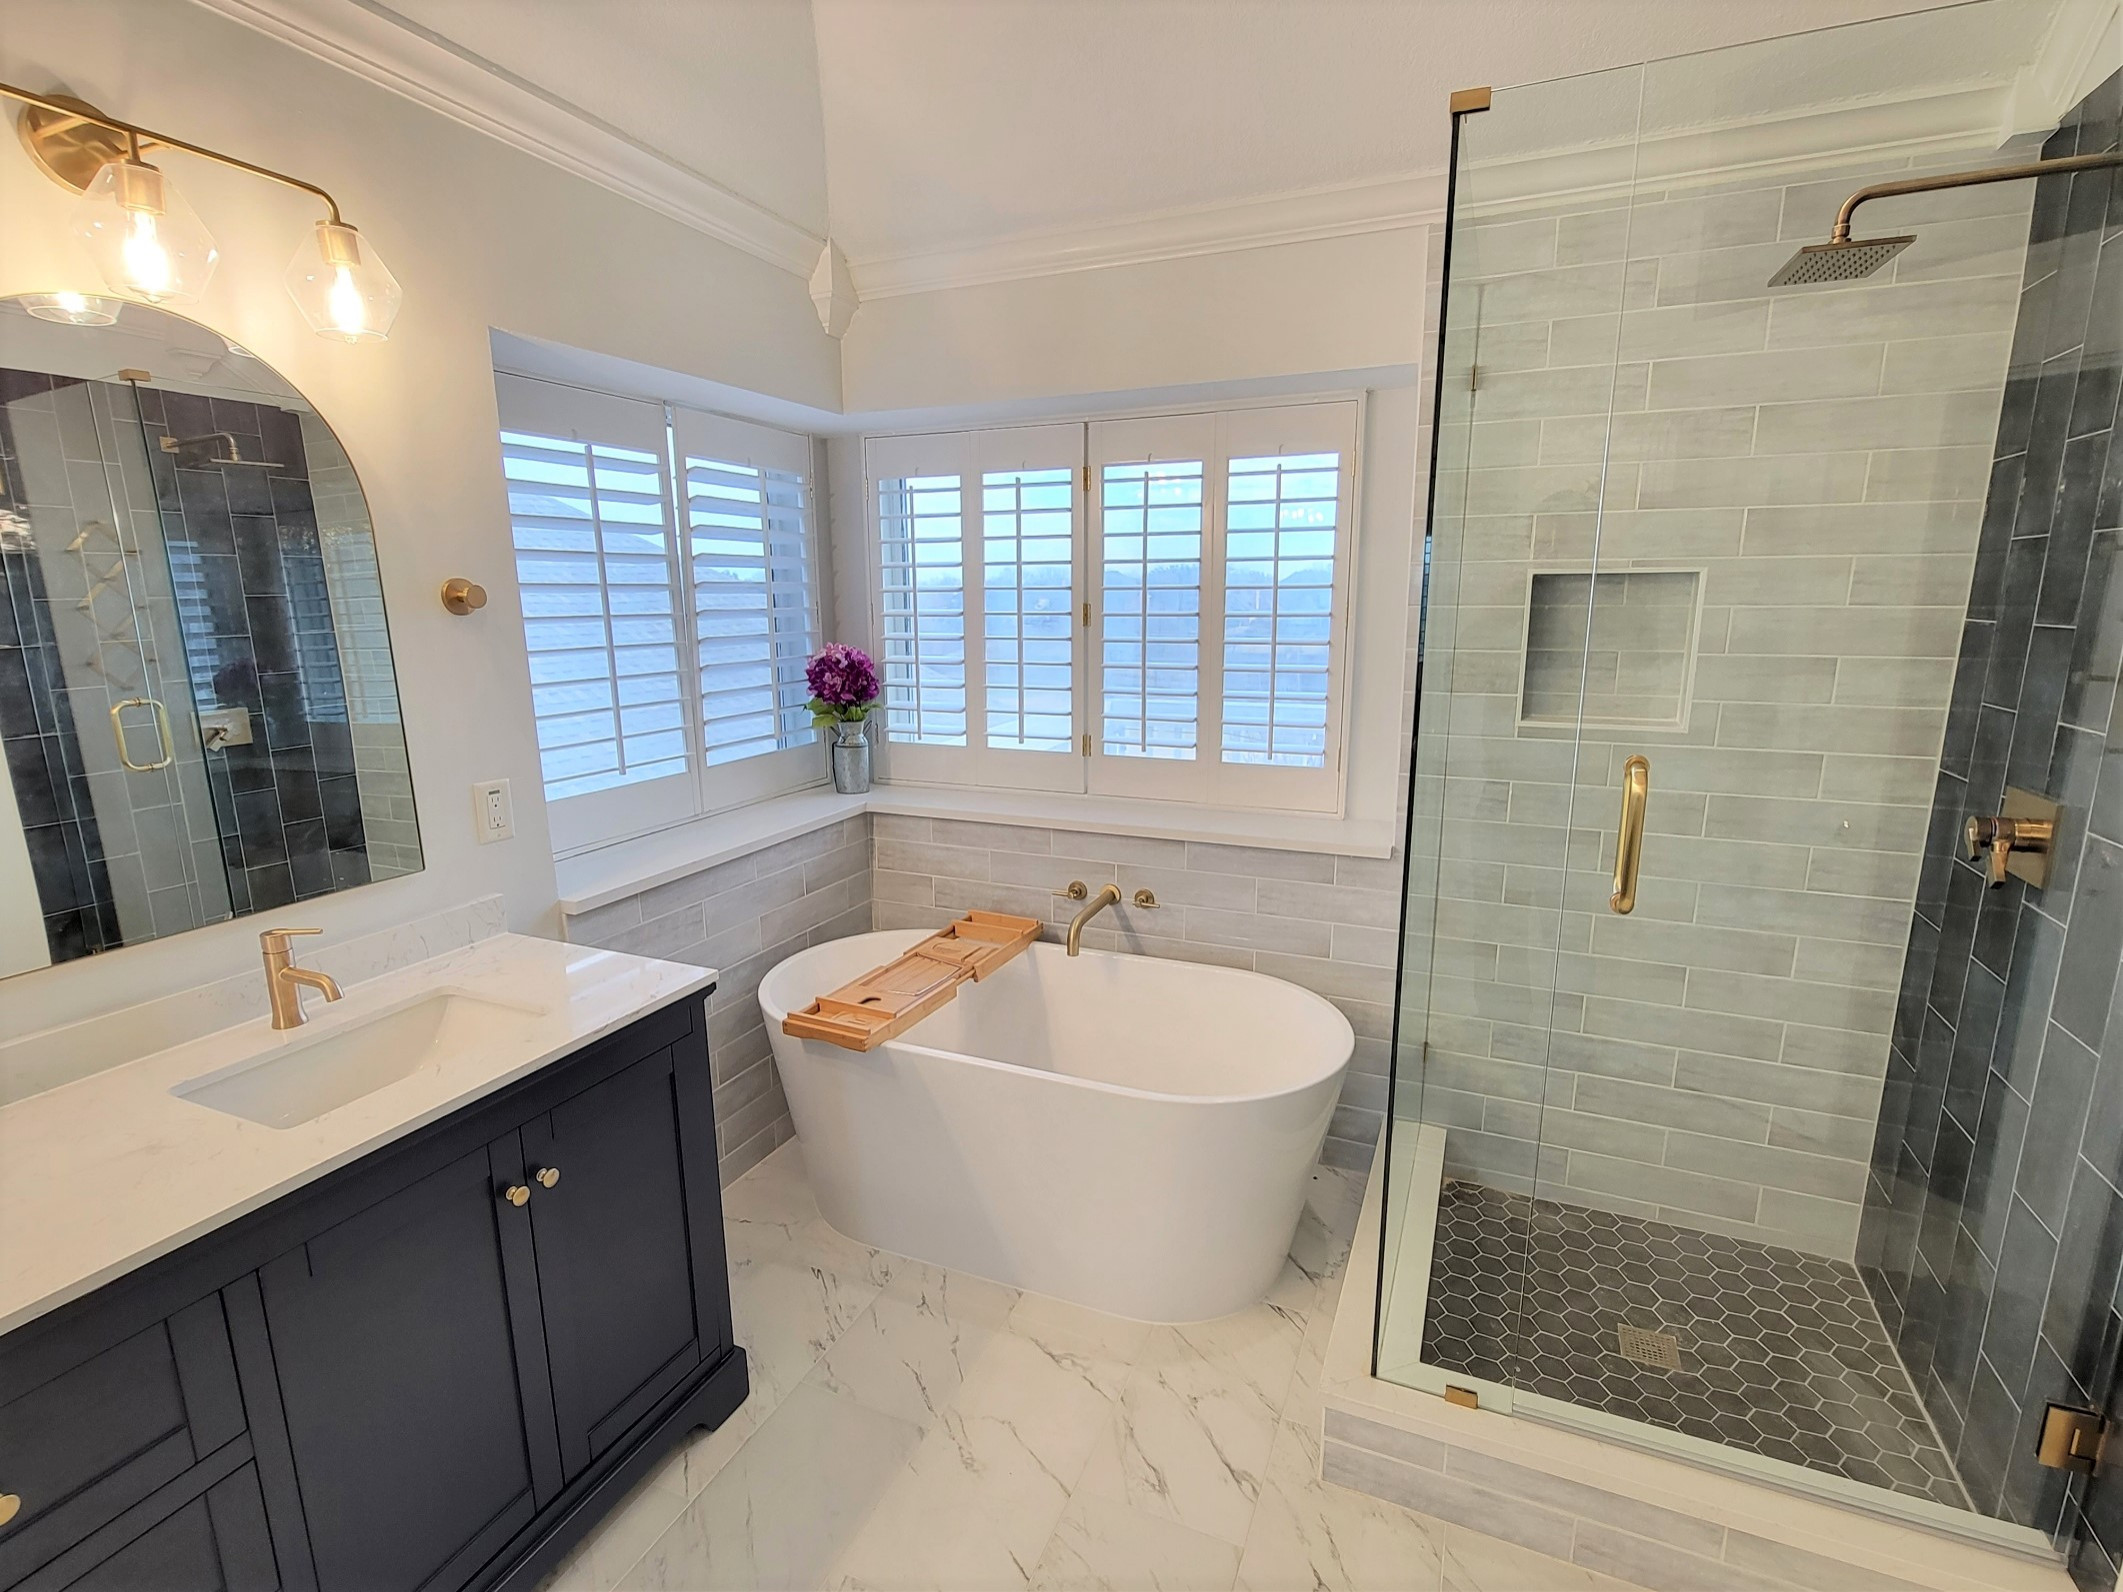 Full master bathroom remodeling: New shower, frameless glass, freestanding tub, vanity, hardware, lighting, mirrors, flooring